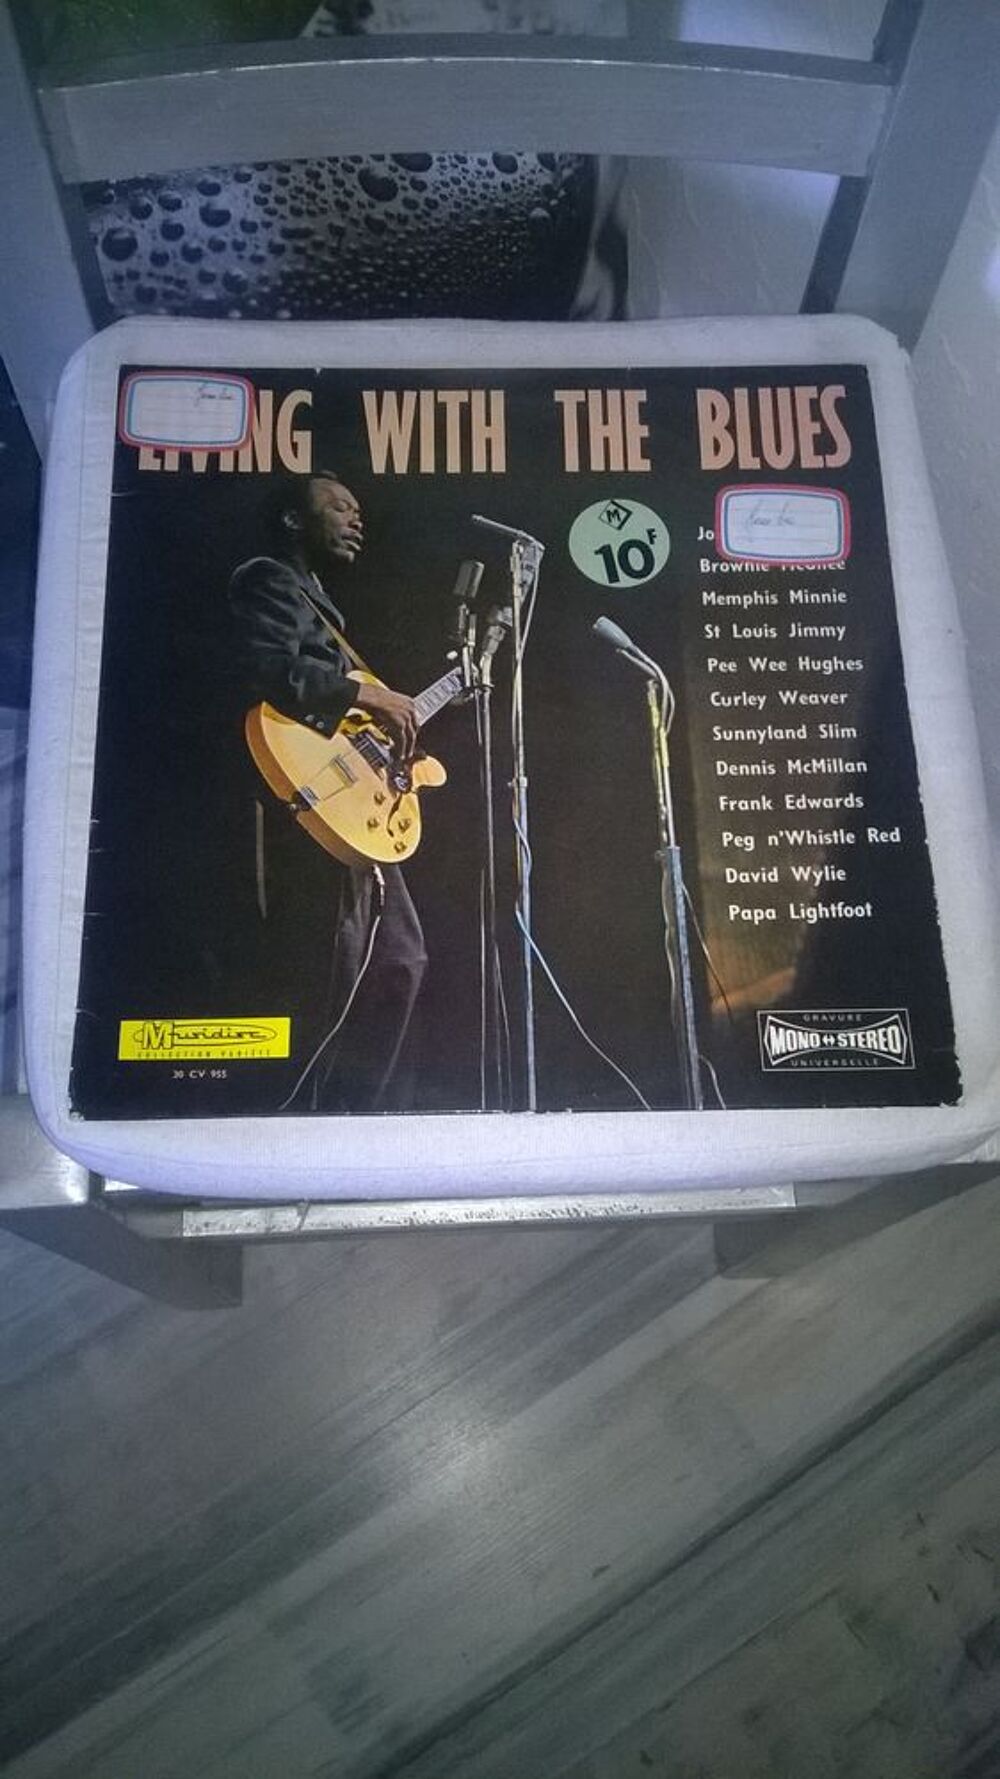 Vinyle Living With The Blues
Bon etat
Livin' With The Blue CD et vinyles